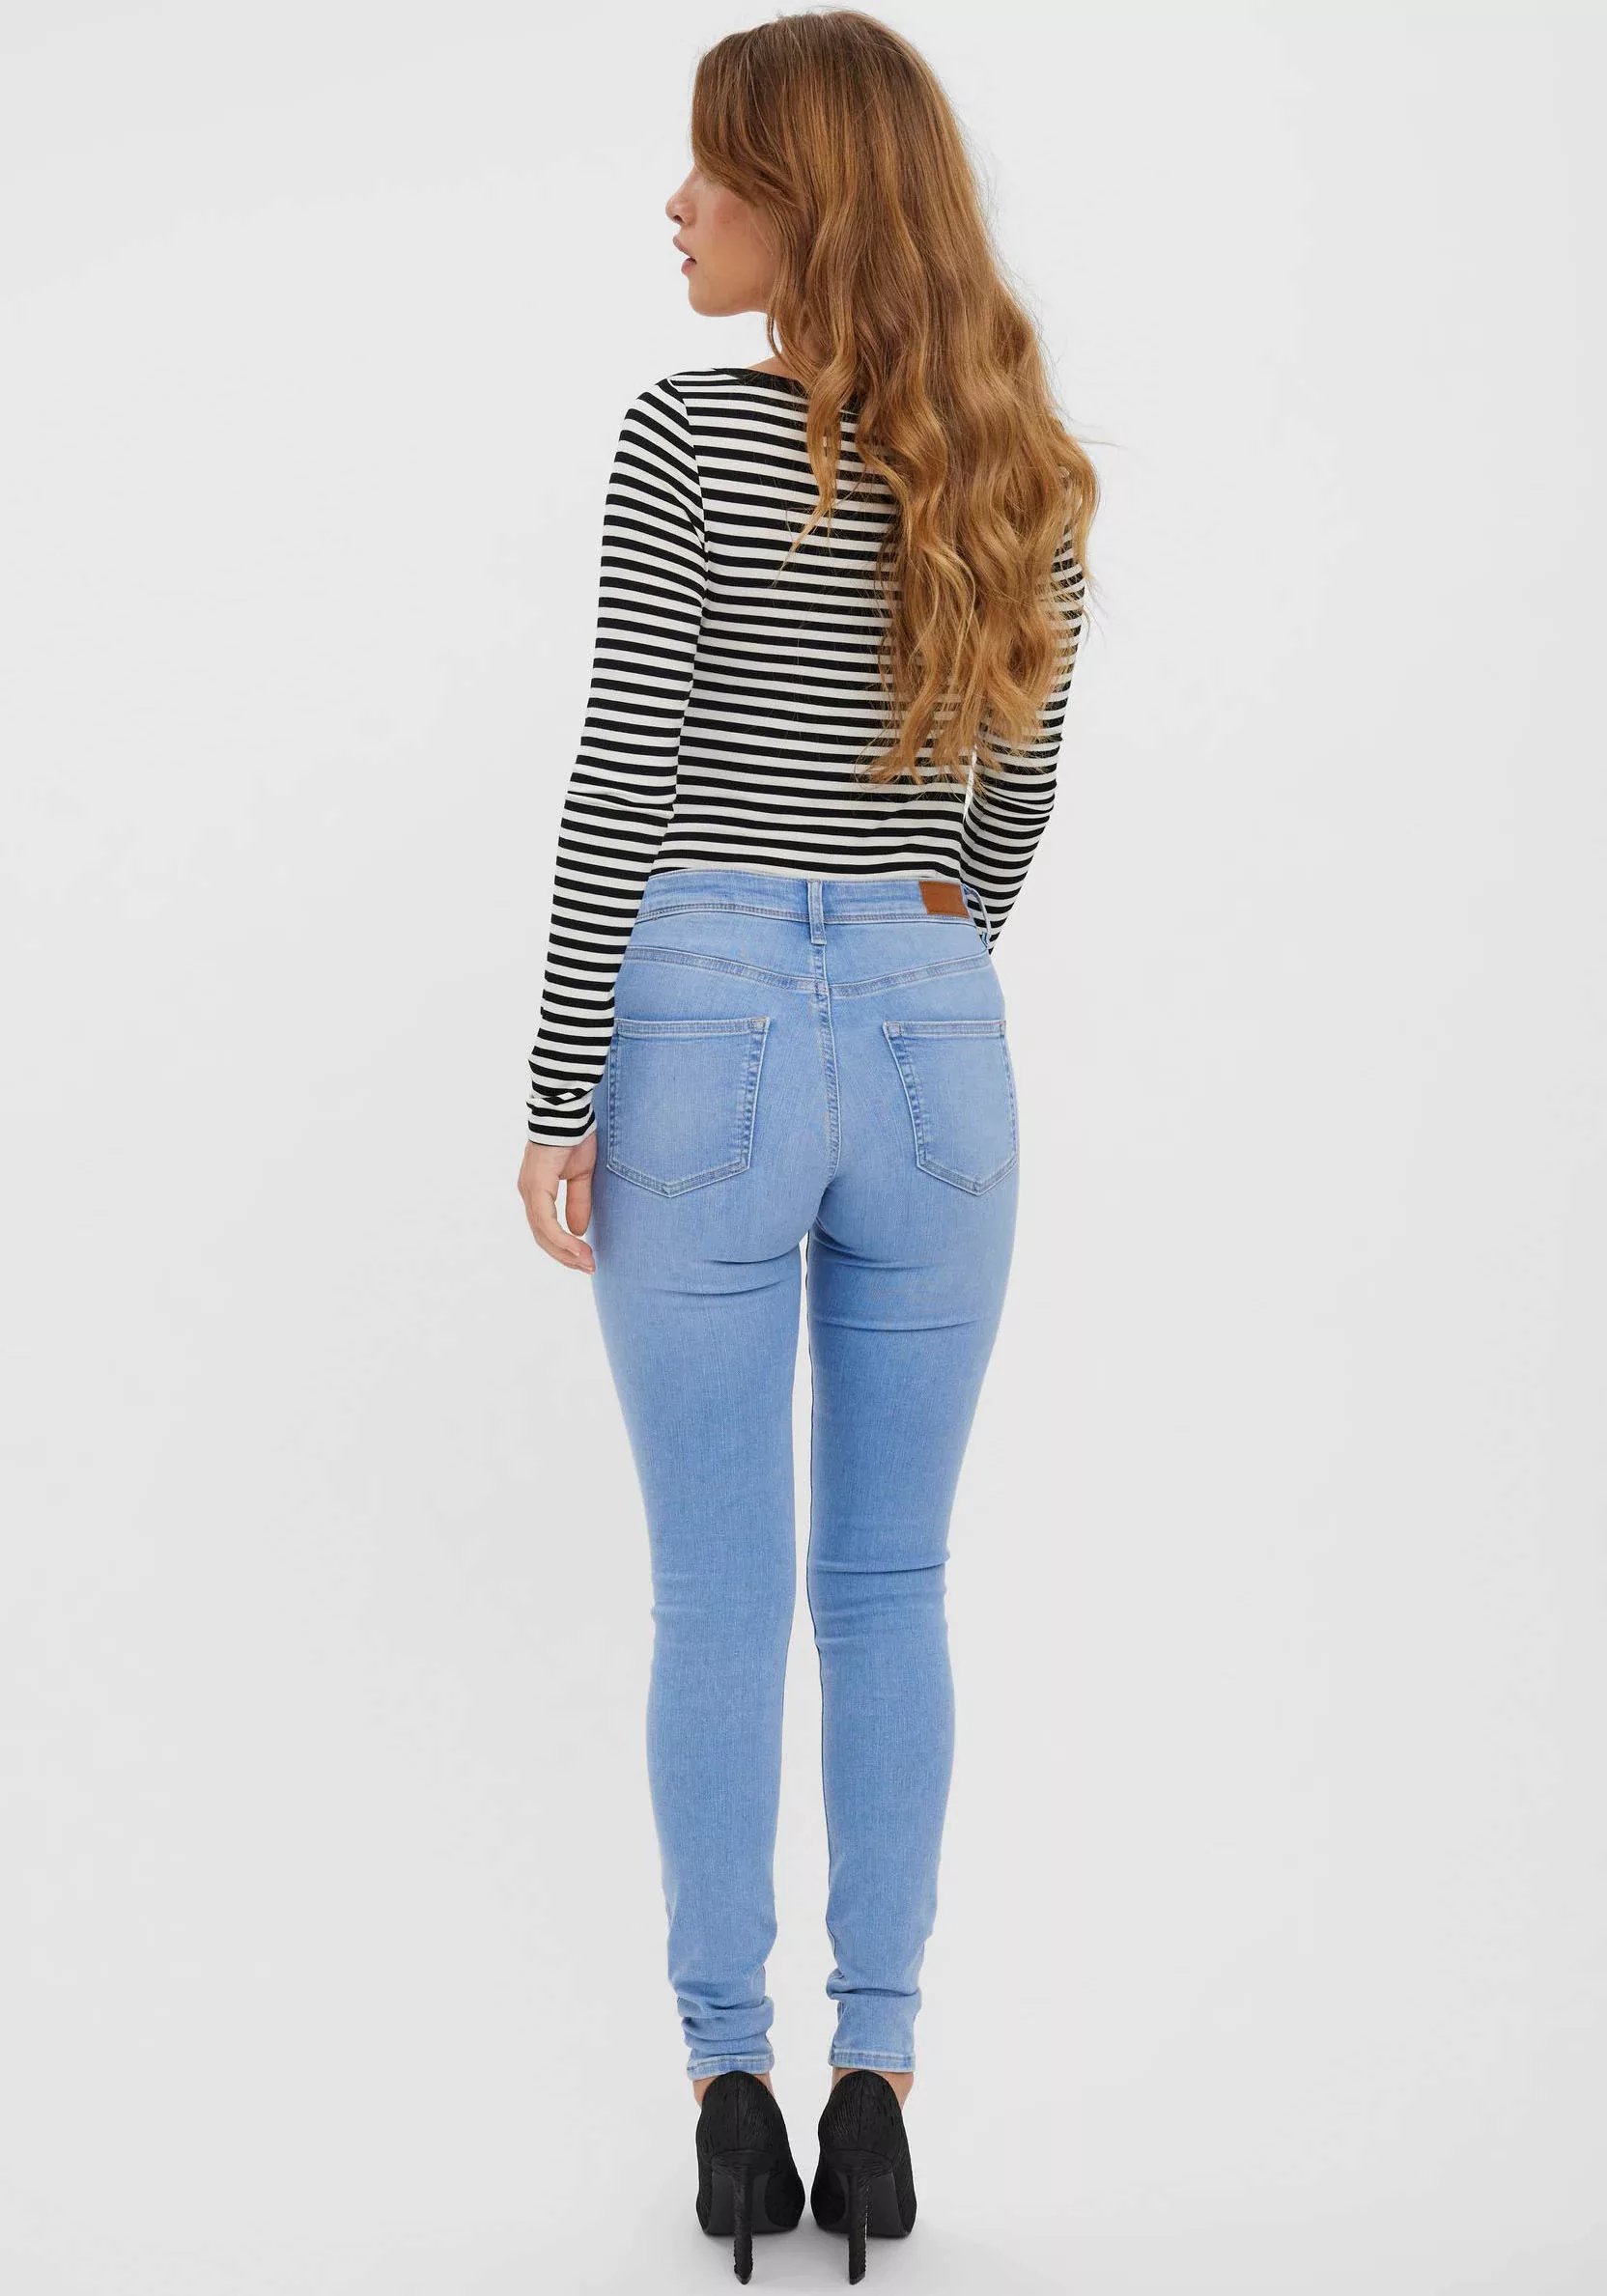 Vero Moda Damen Jeans VMLUX RI371 Slim Fit - Blau Light Blue Denim günstig online kaufen